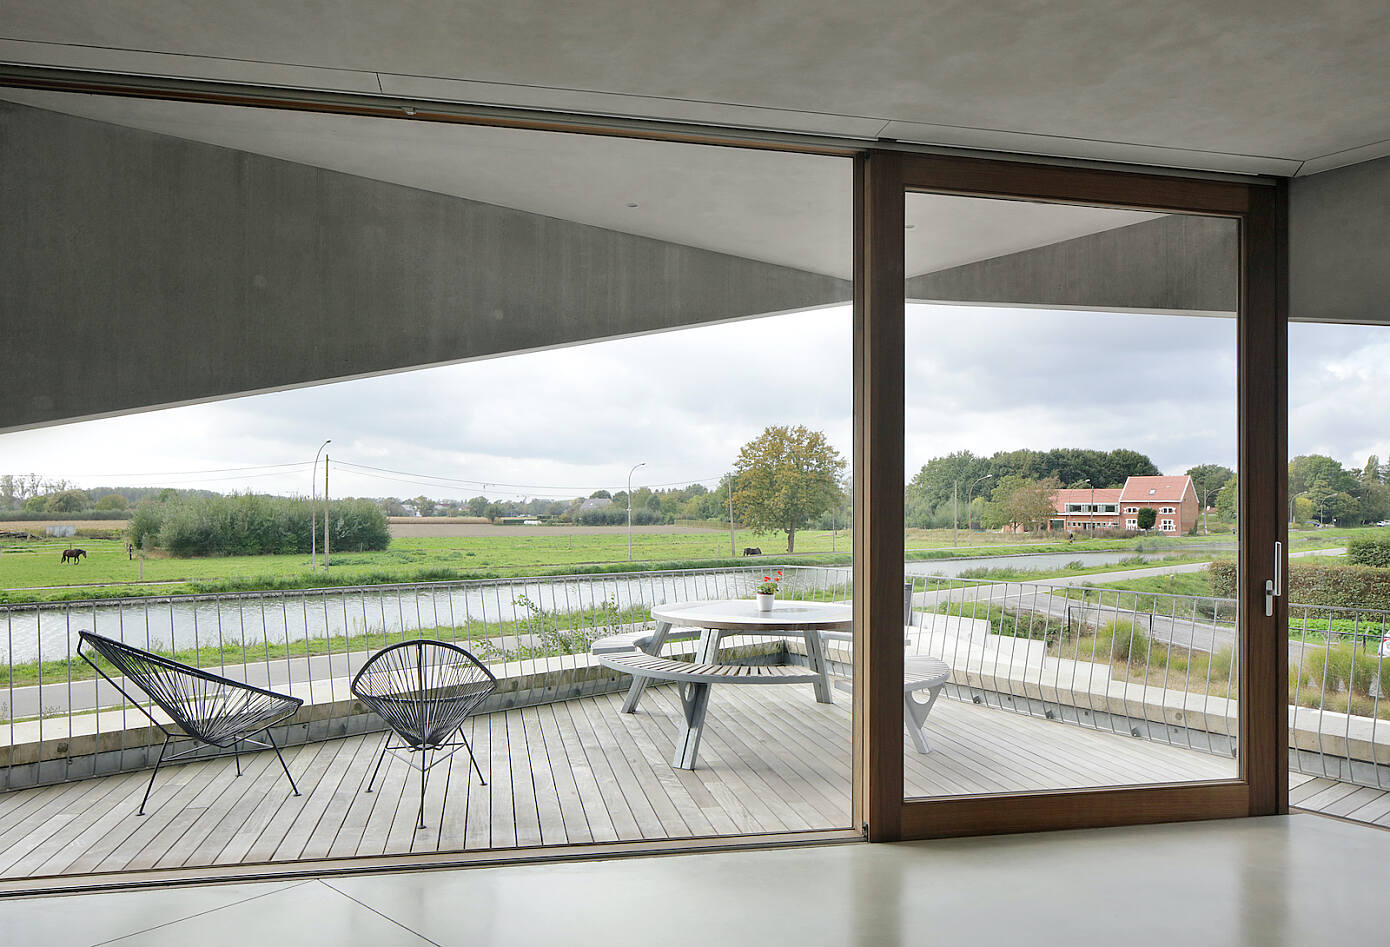 House N-DP by Graux & Baeyens Architecten